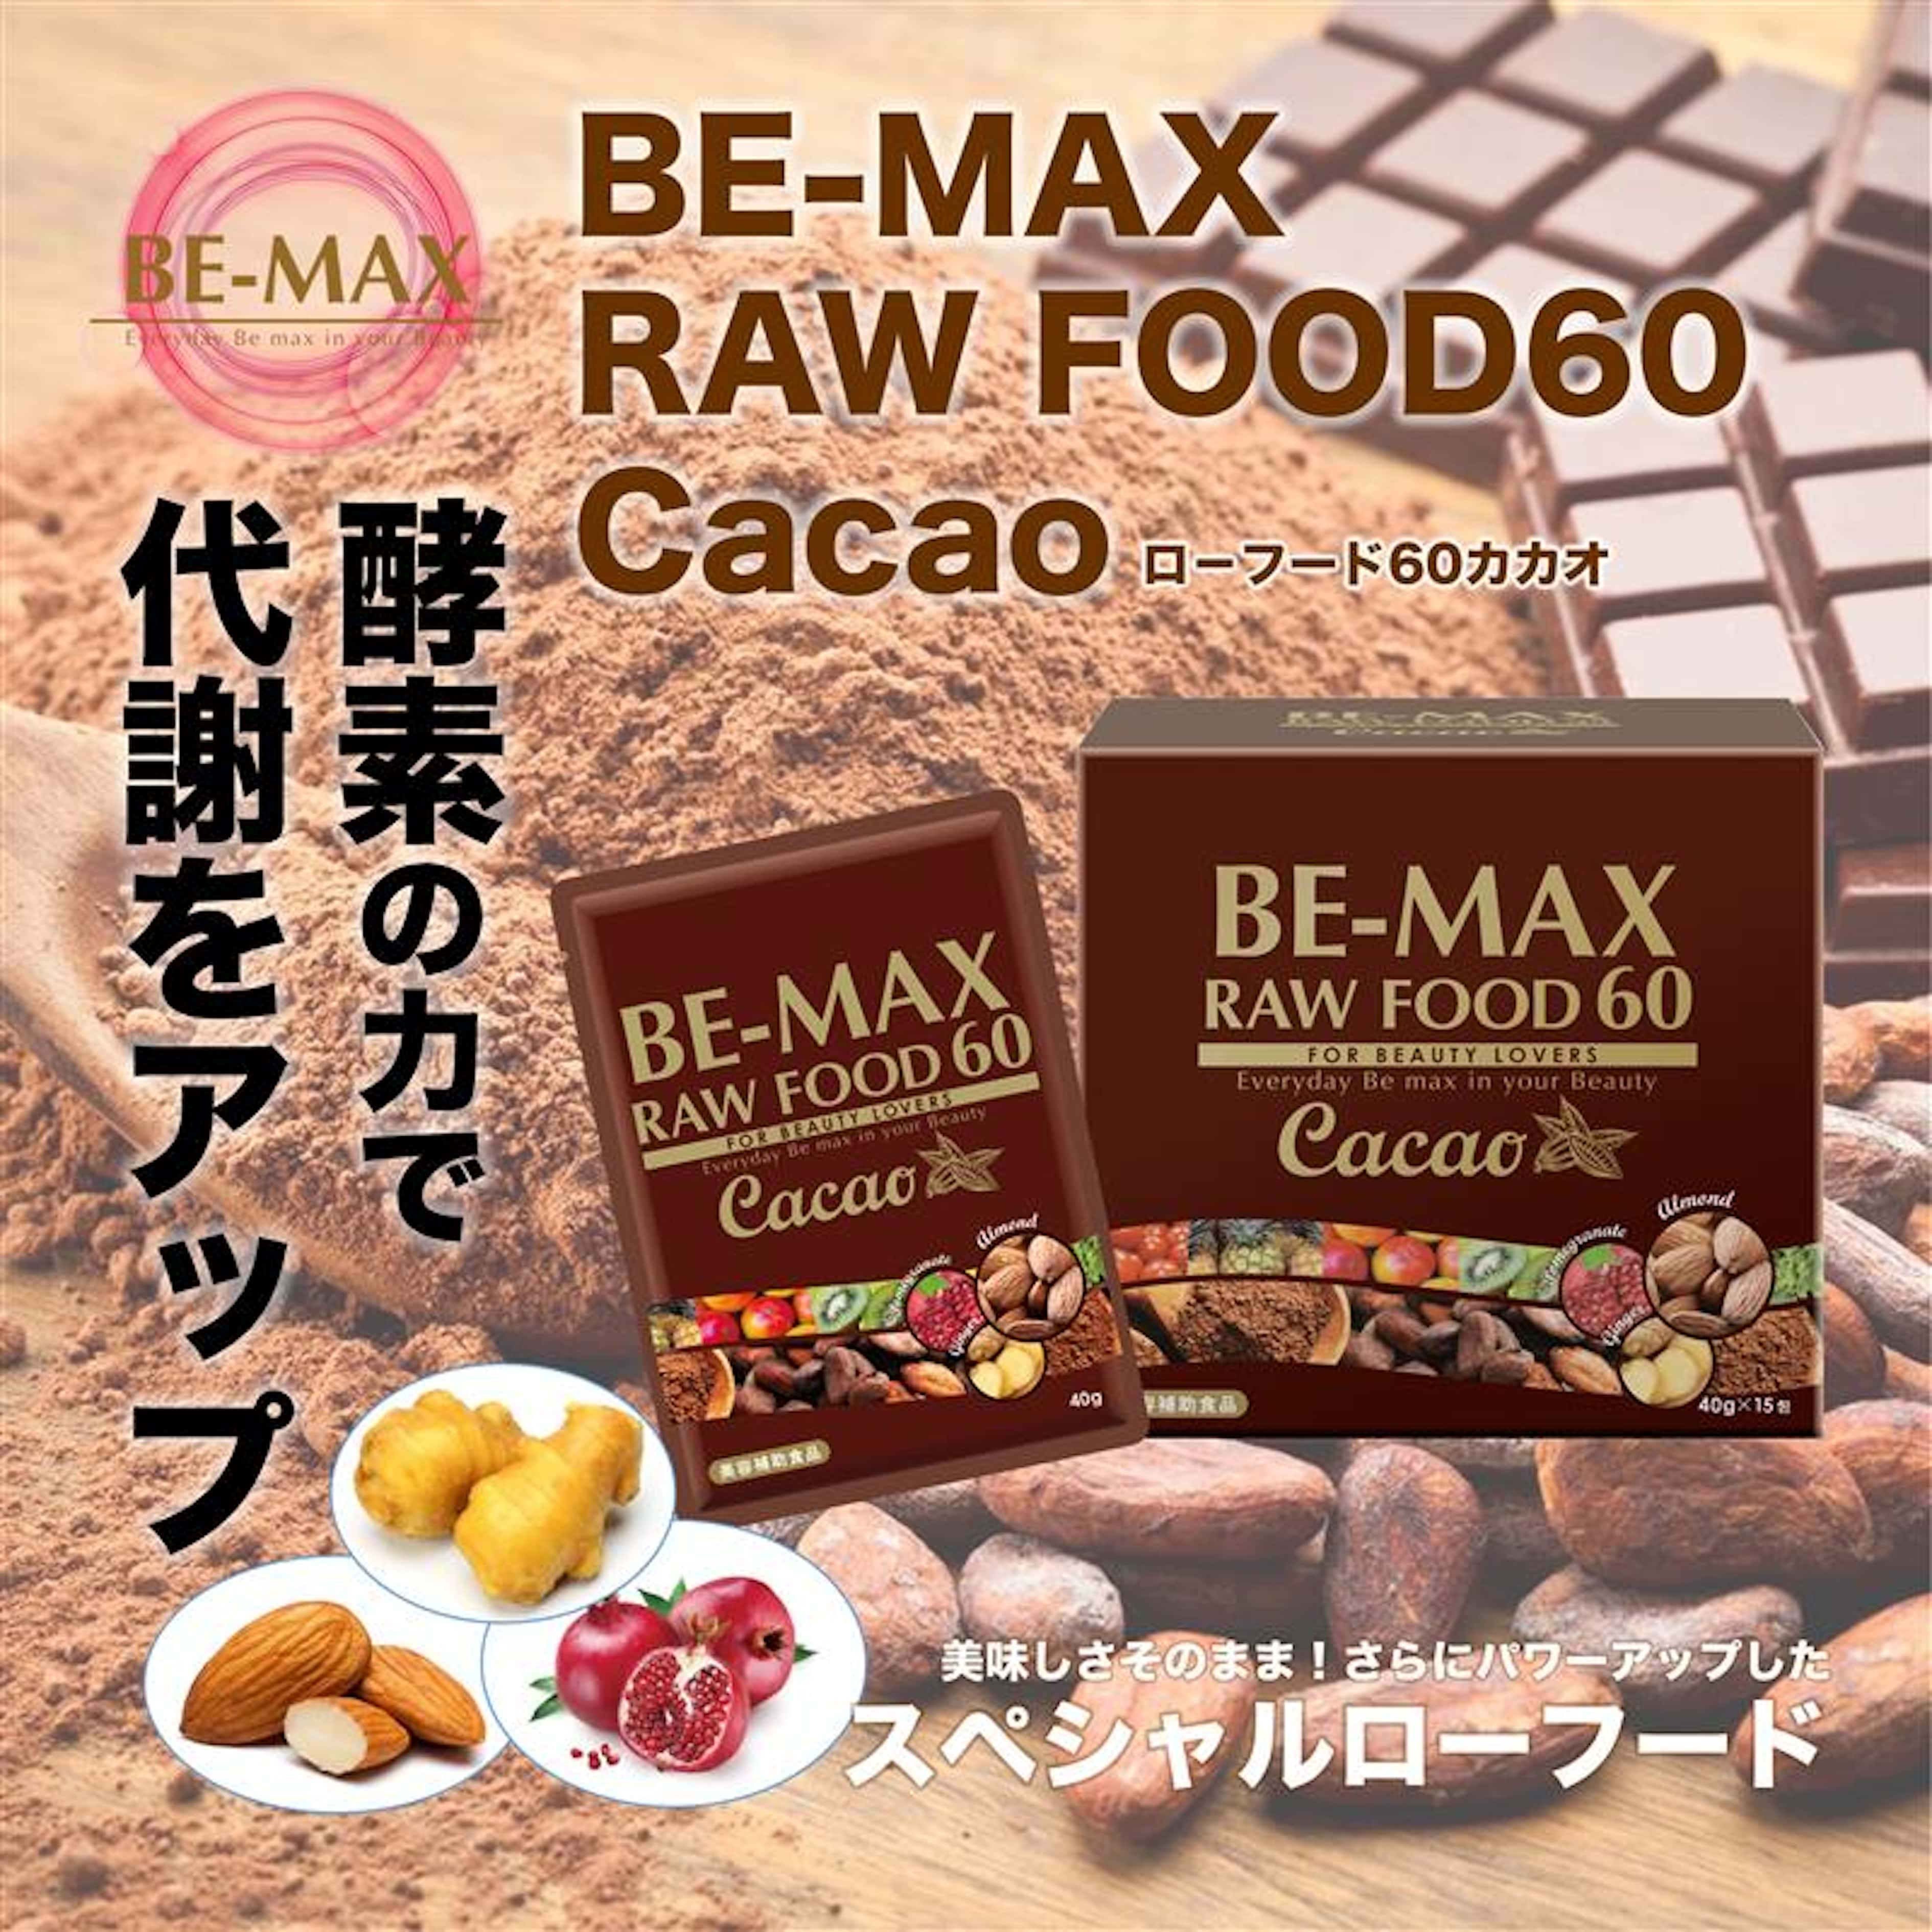 BE-MAX ビーマックス ローフード 60 Cacao 105 カカオ19袋